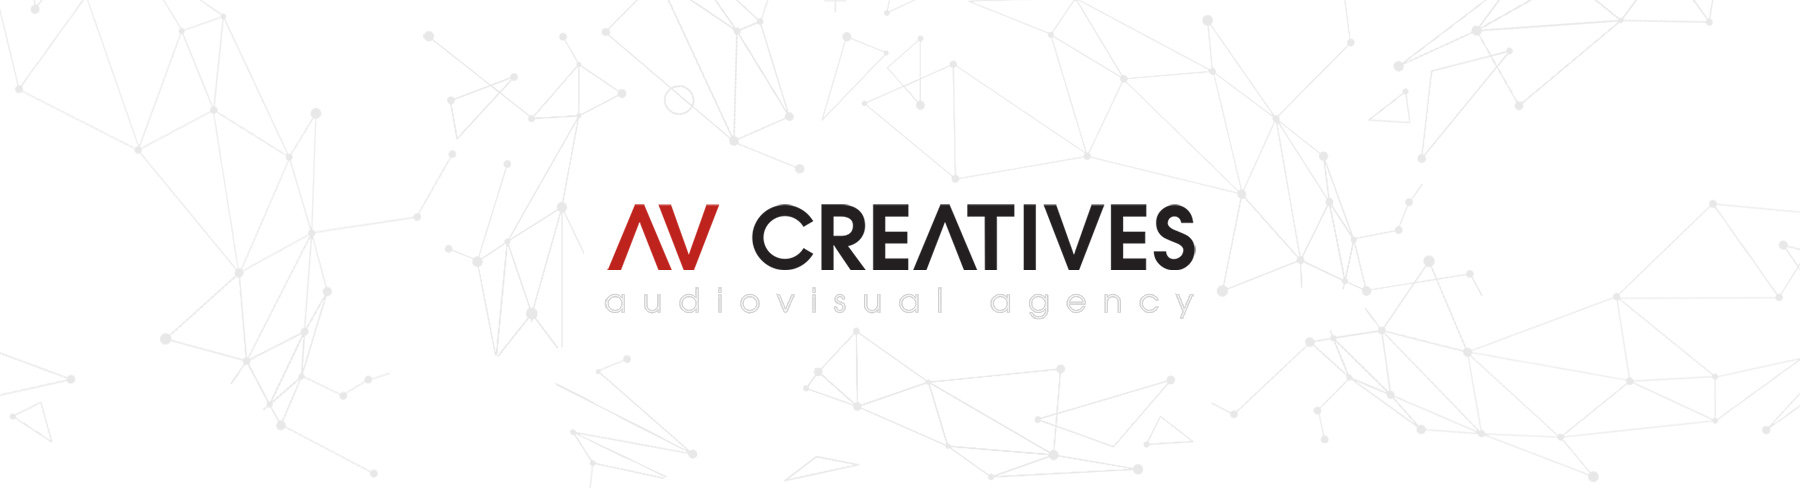 AV CREATIVES - audiovisual agency